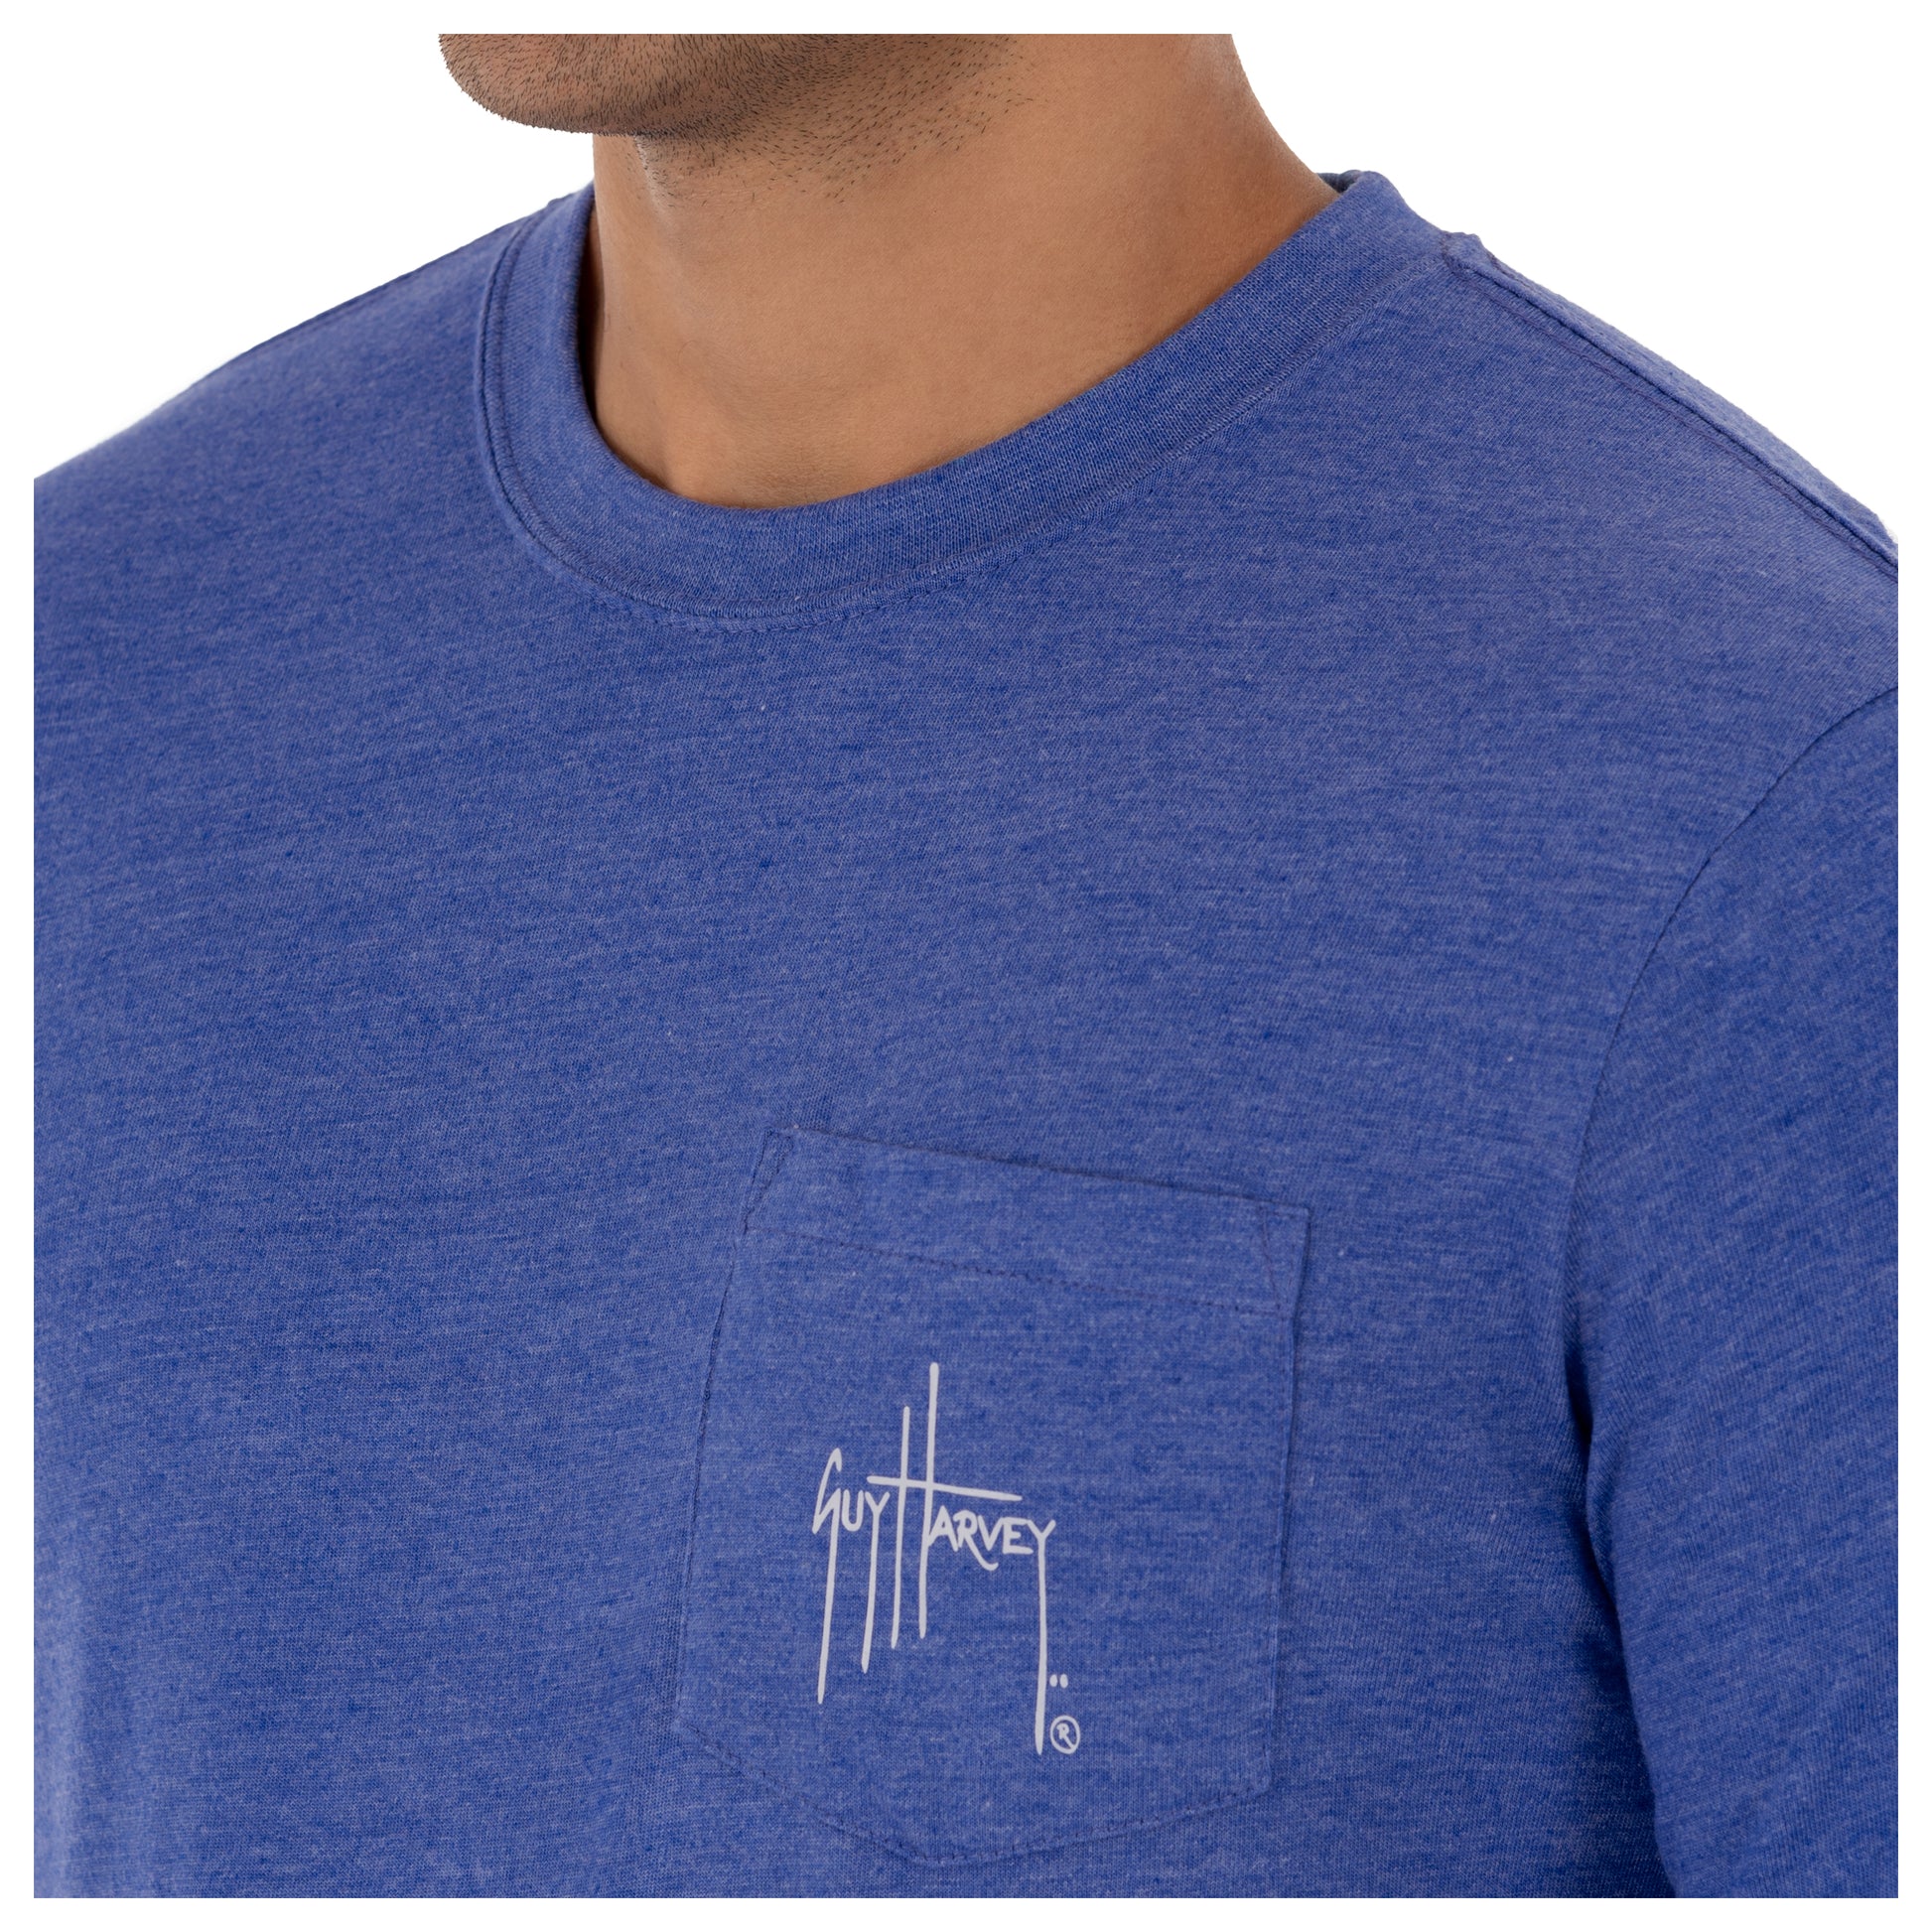 Men's Sunset Marlin Long Sleeve Pocket Royal T-Shirt View 4